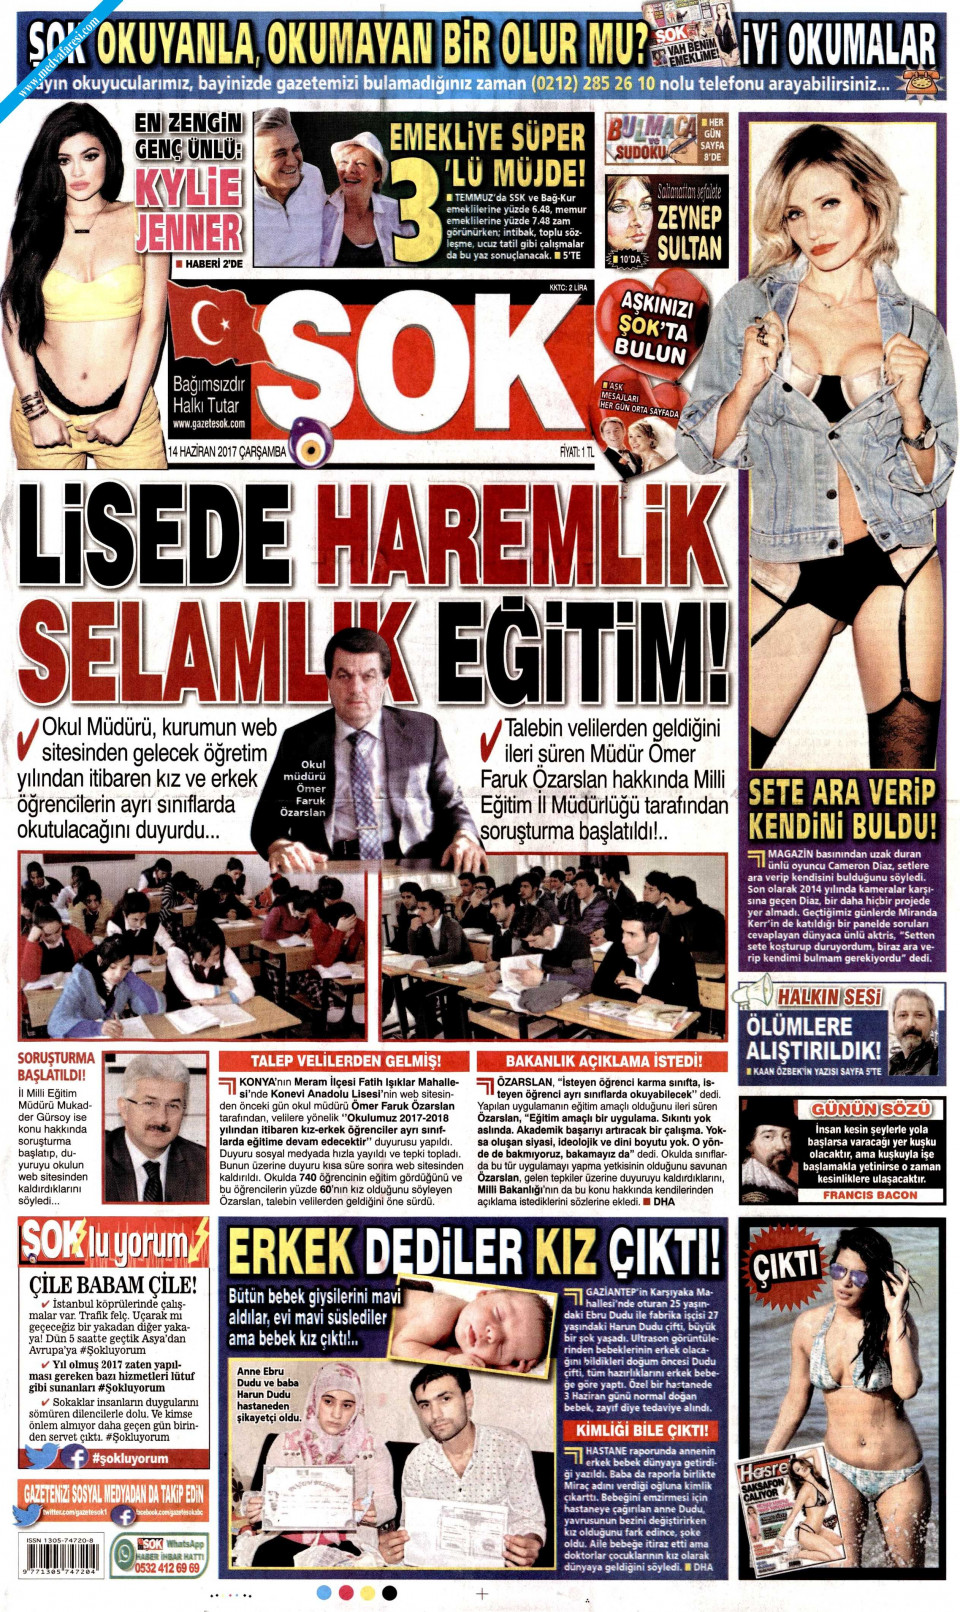 Şok Gazetesi 11 Temmuz 2018 Anasayfası - Haber3